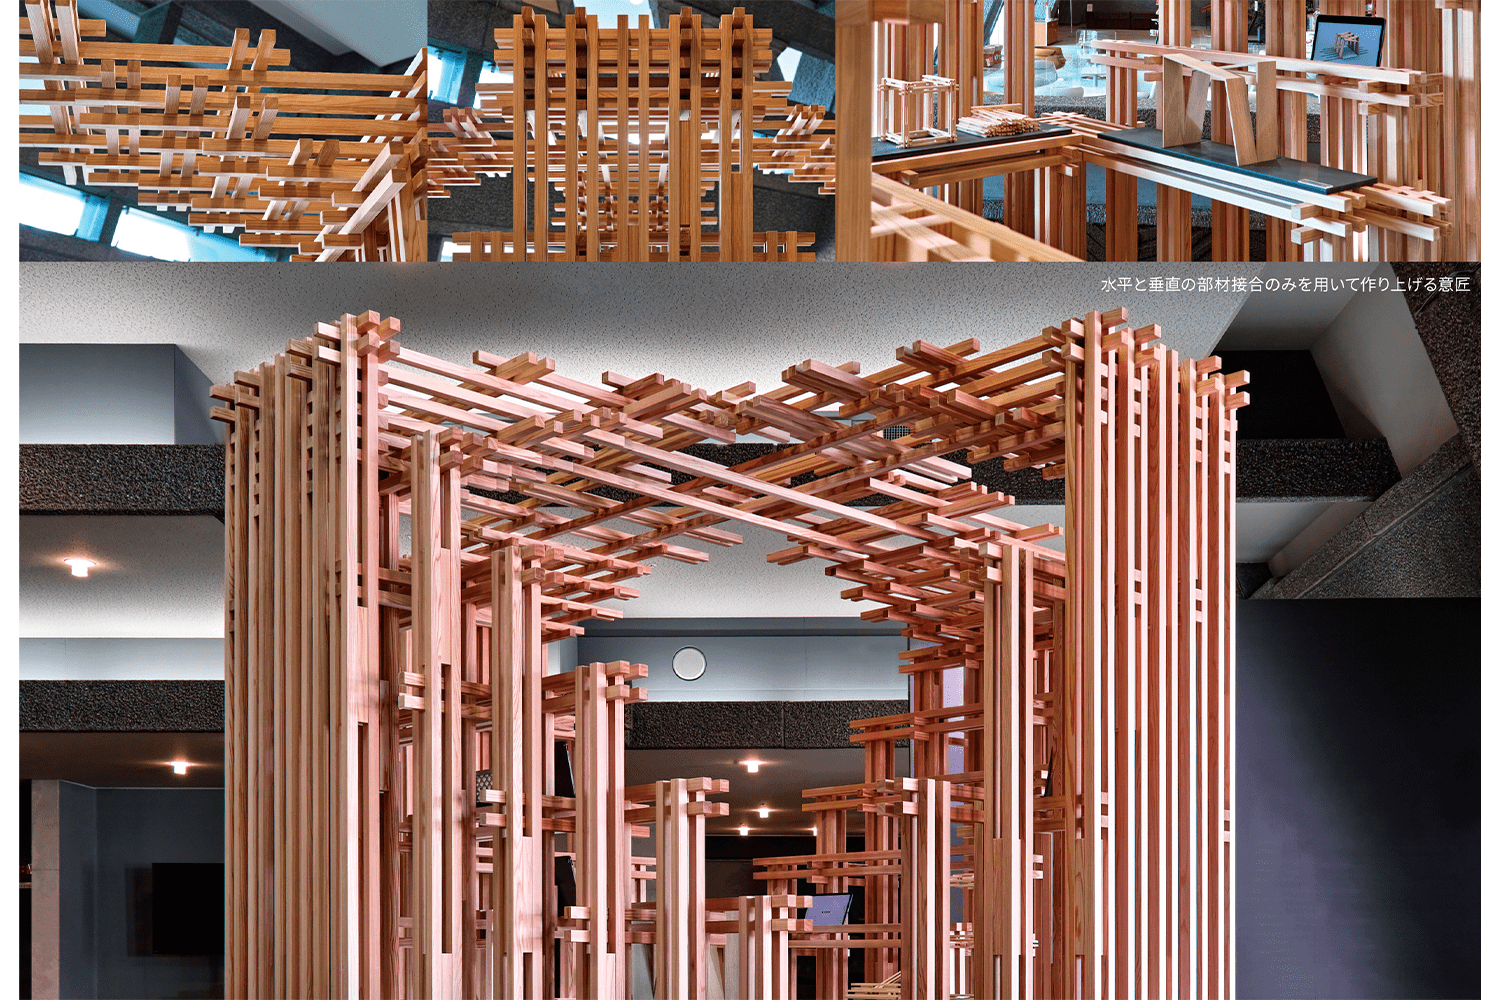 軽量な小断面製材で軸材ユニットを構成し、金物を使わずに差し込むだけで接合。新接合法による木質空間は、製材断面の寸法により多様なデザイン展開が可能